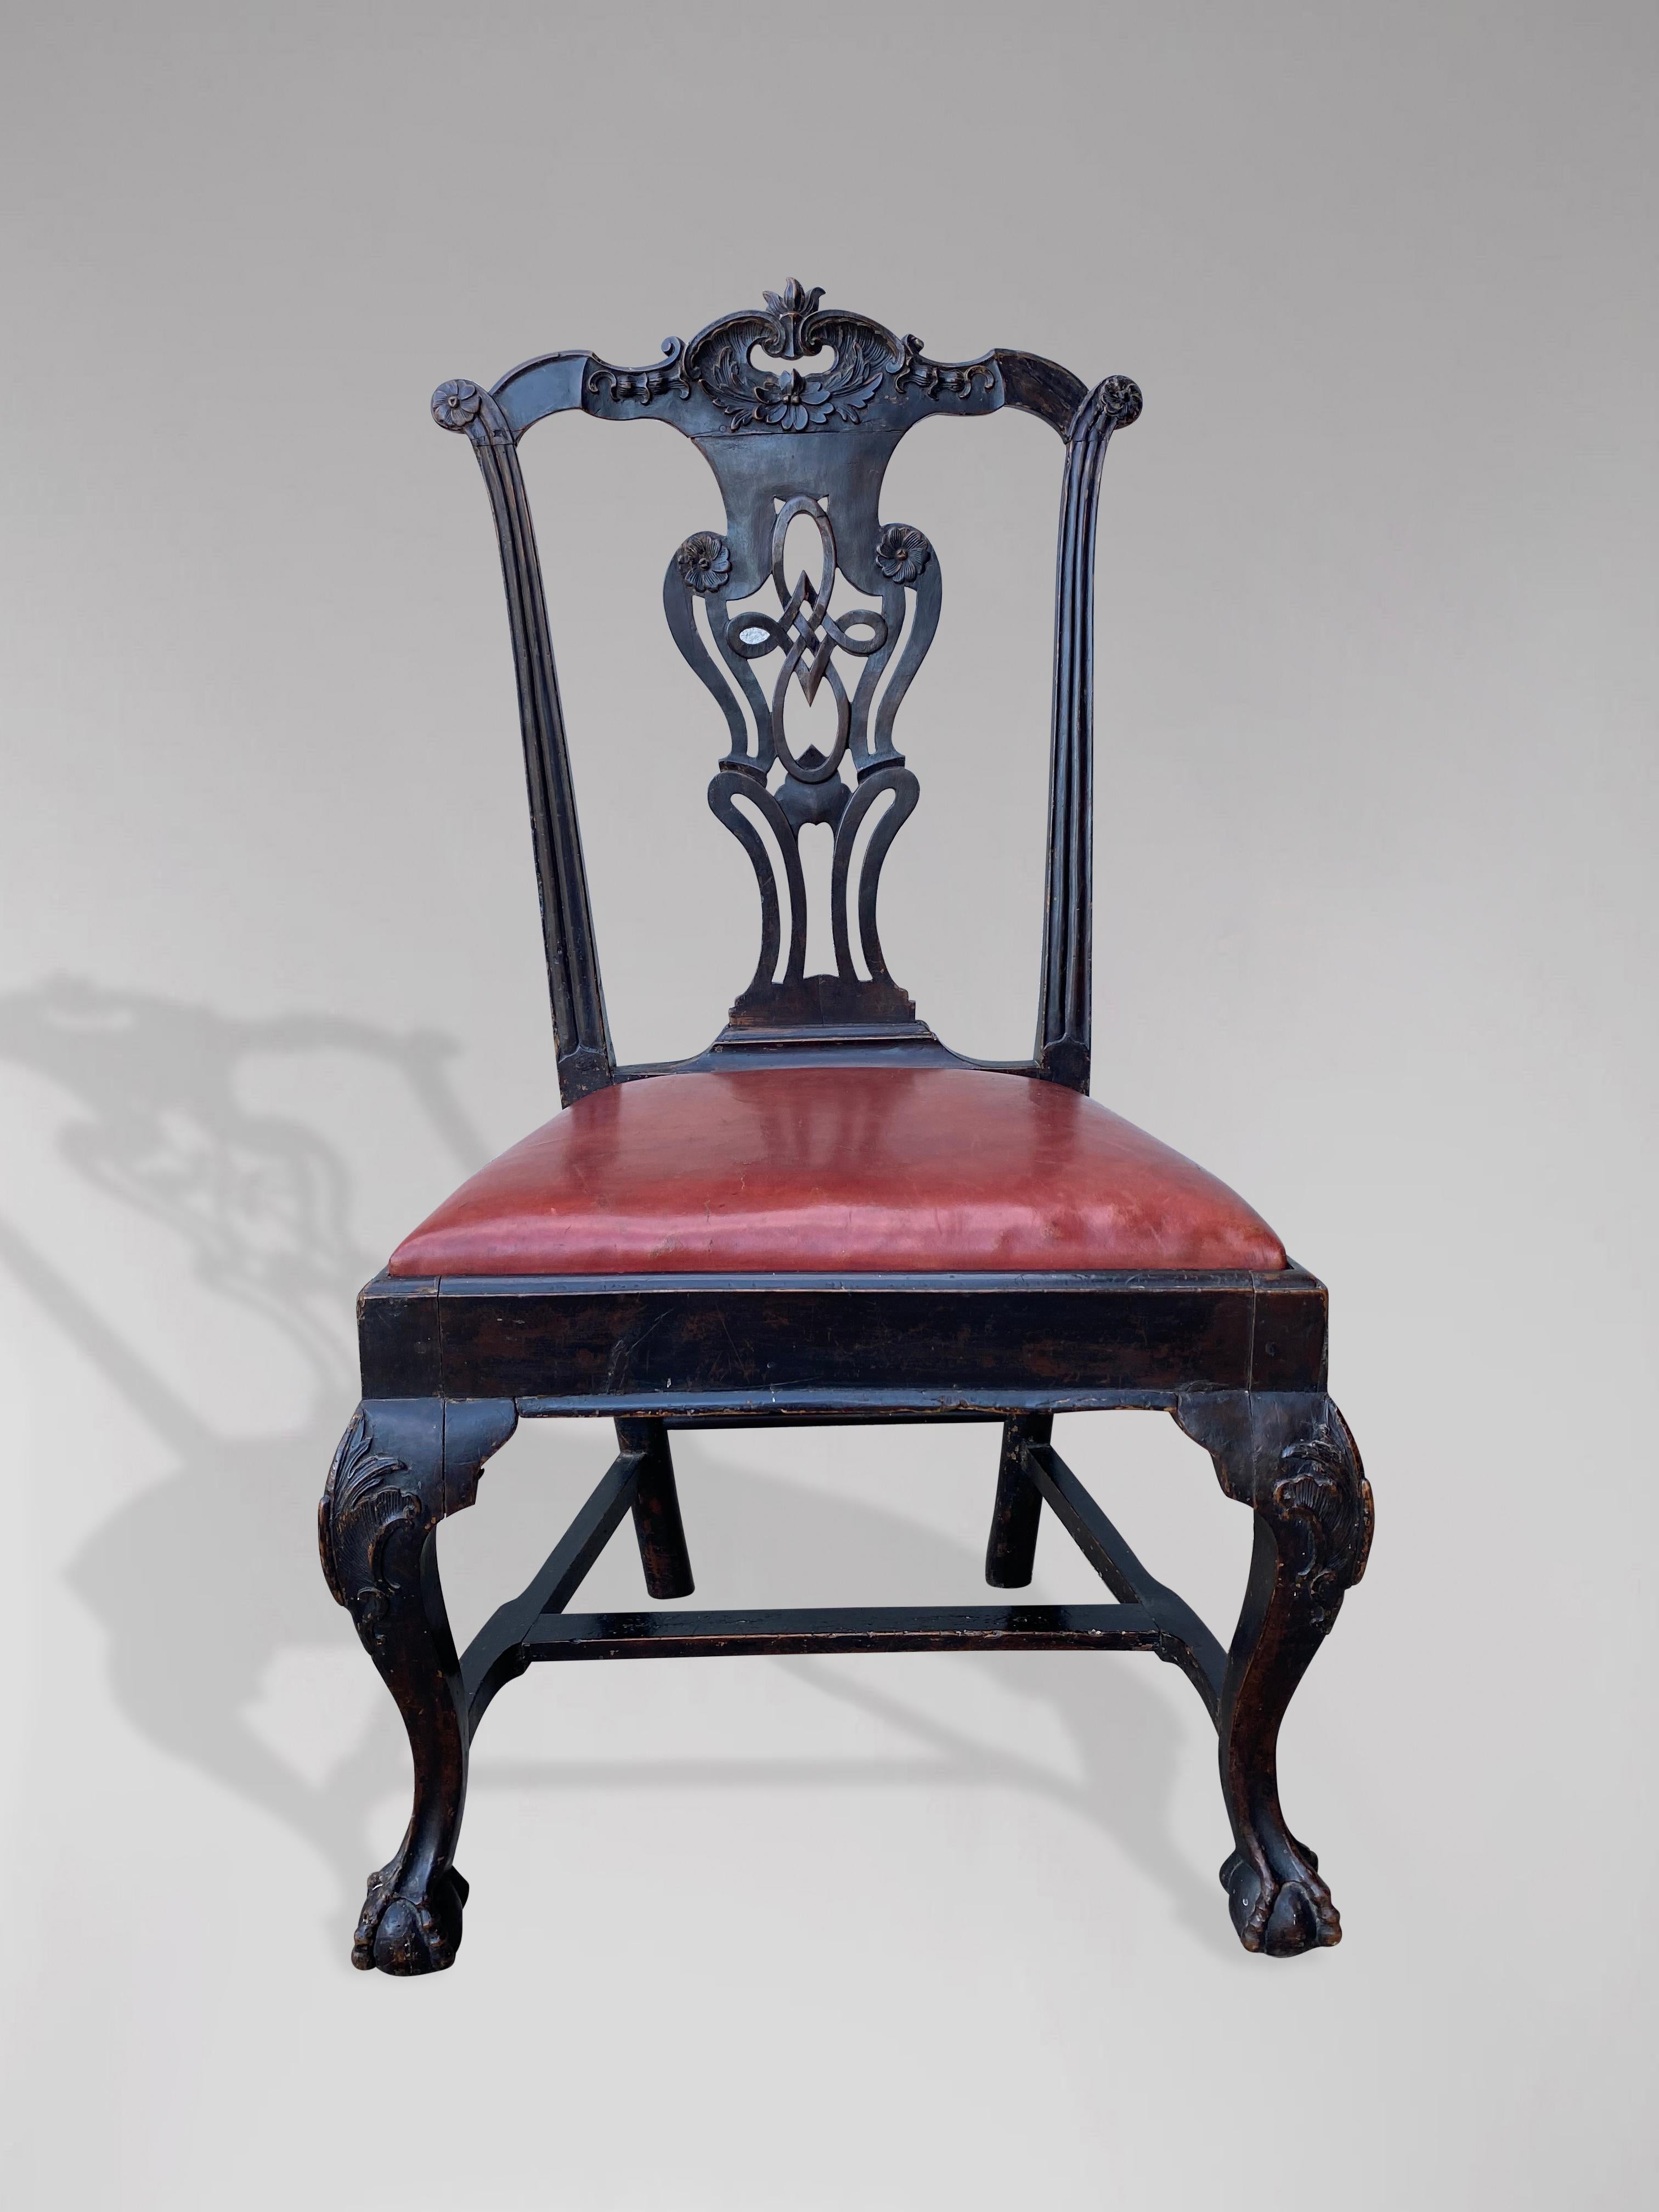 Ein bemalter und geschnitzter Einzelstuhl aus dem frühen 20. Jahrhundert in der Chippendale-Manier. Mit serpentinenförmiger Kammleiste und durchbrochener Rückenleiste mit geschnitzten Ornamenten. Der Stuhl ist originallackiert und hat einen